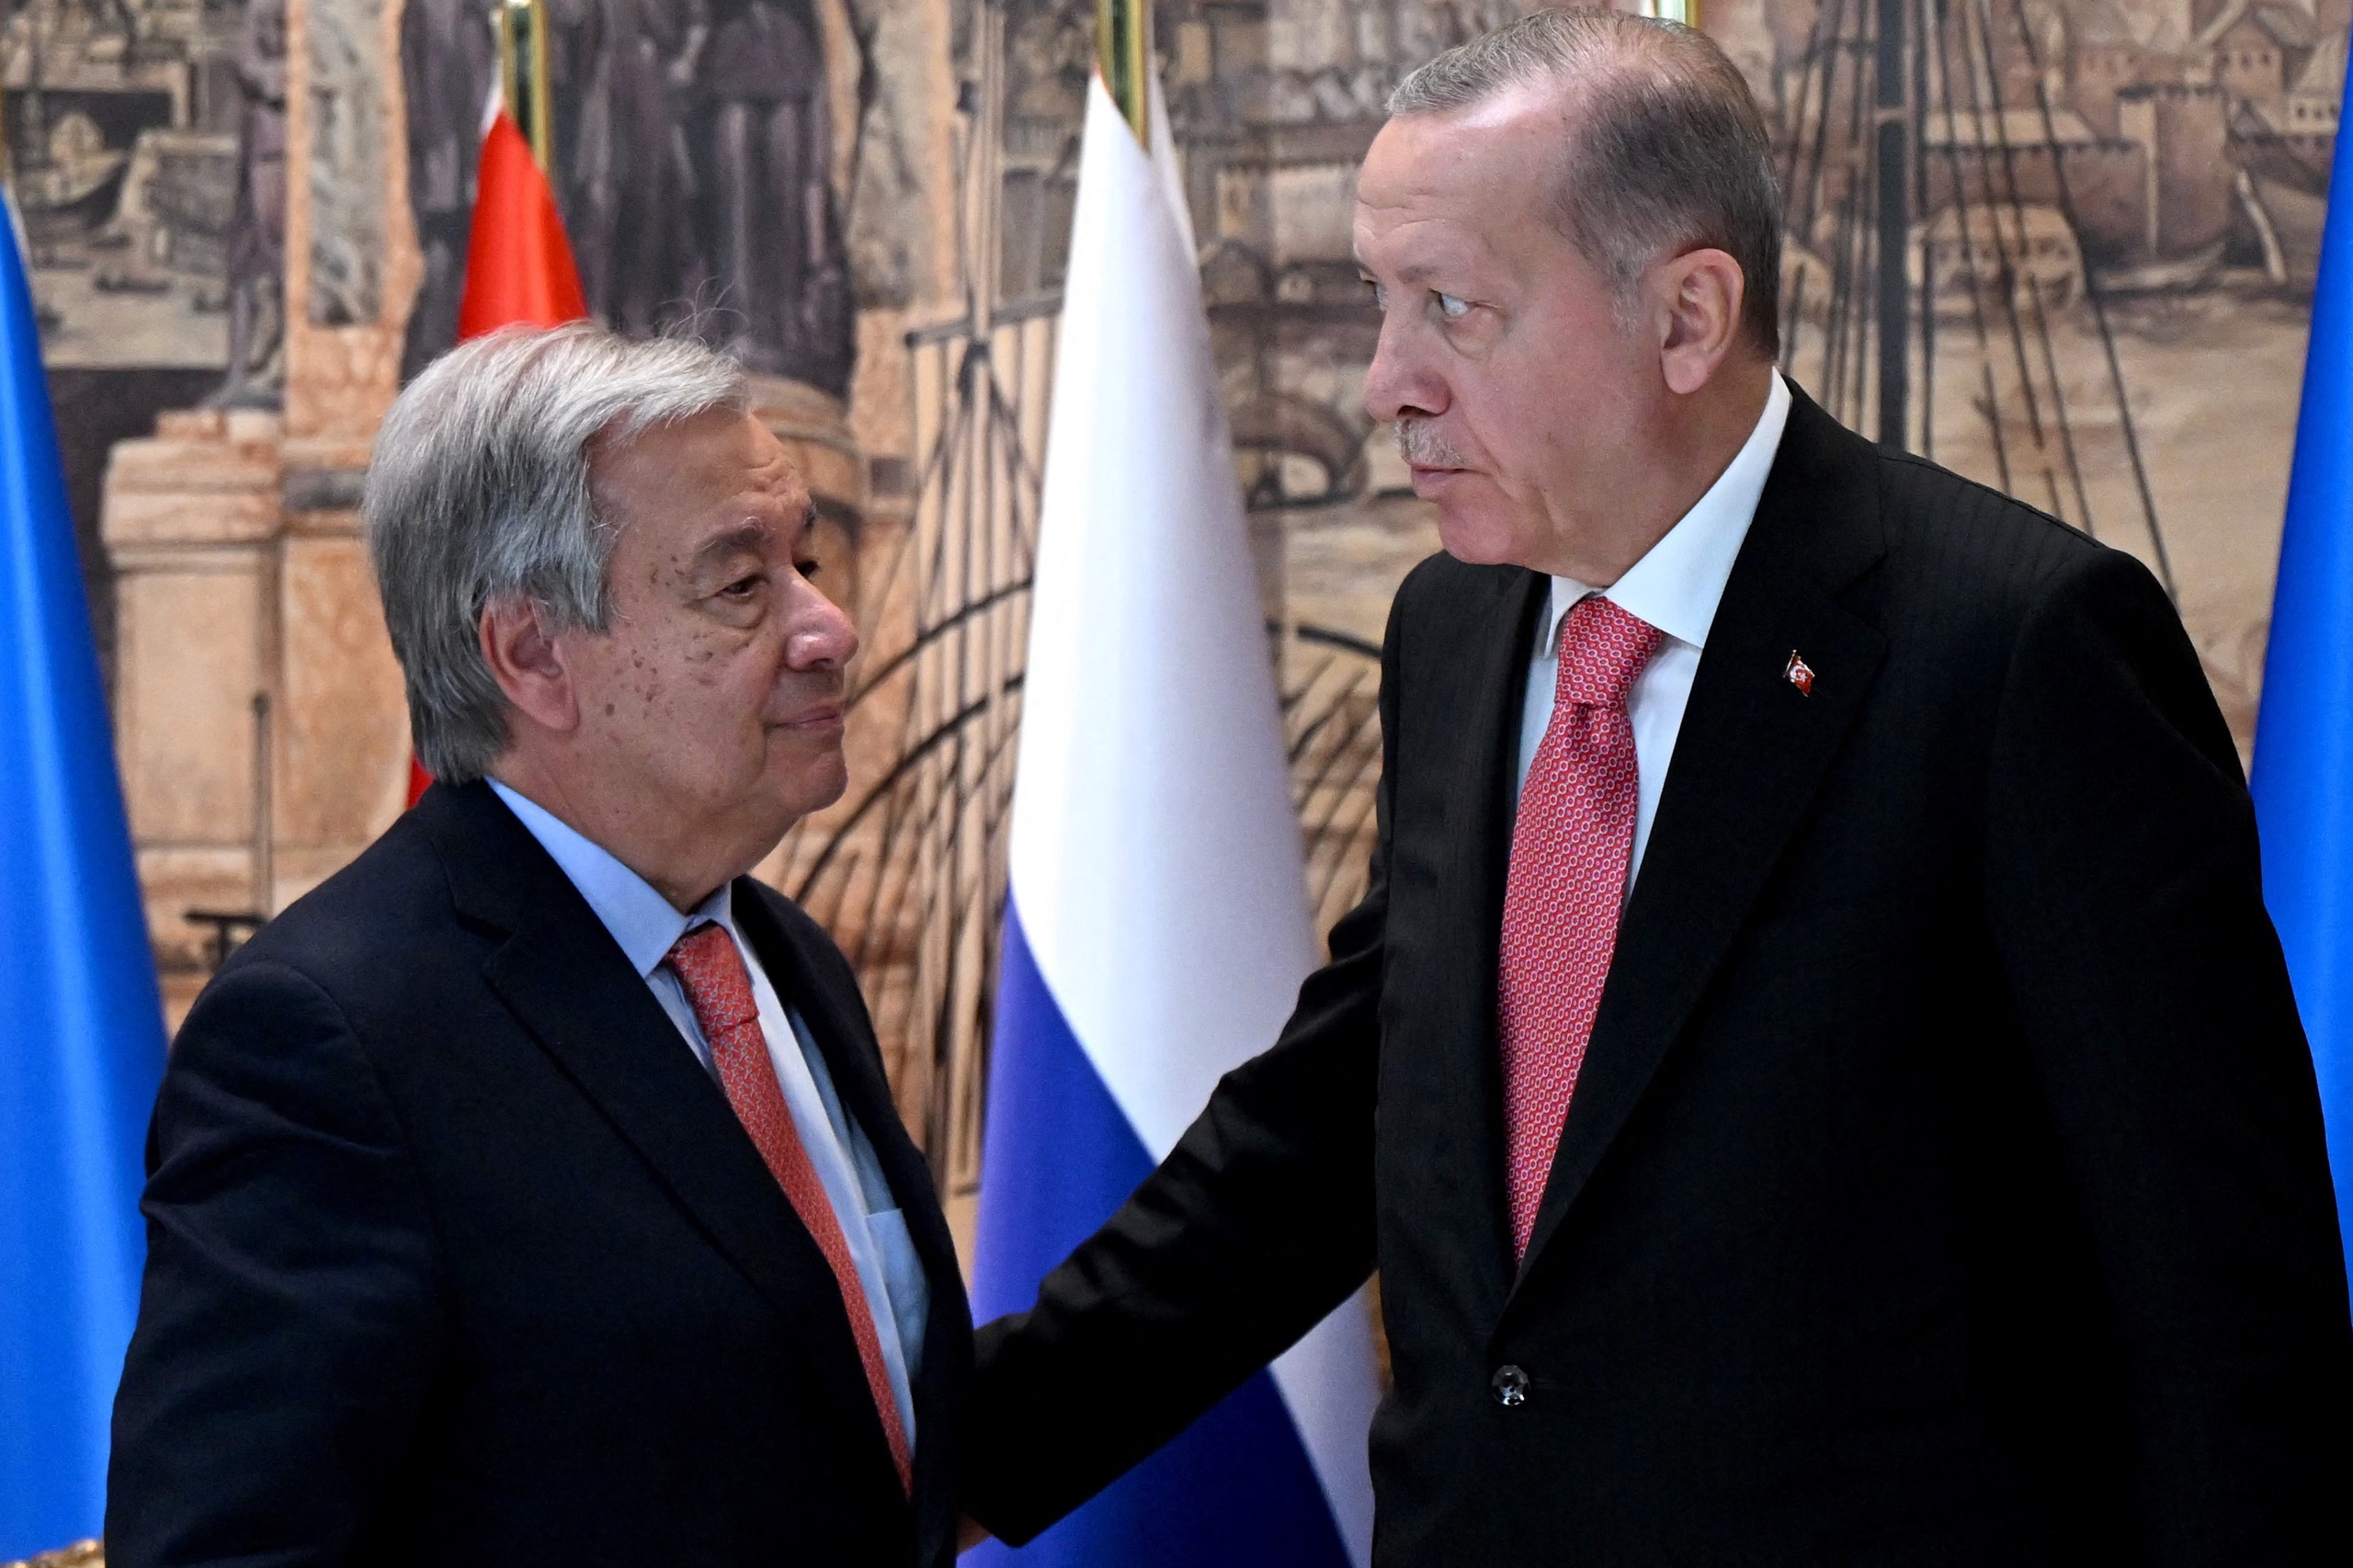 VN secretaris-generaal Antonio Guterres (l) en de Turkse president Recep Tayyip Erdogan (r) na afloop van de ceremonie die de graandeal bezegelde